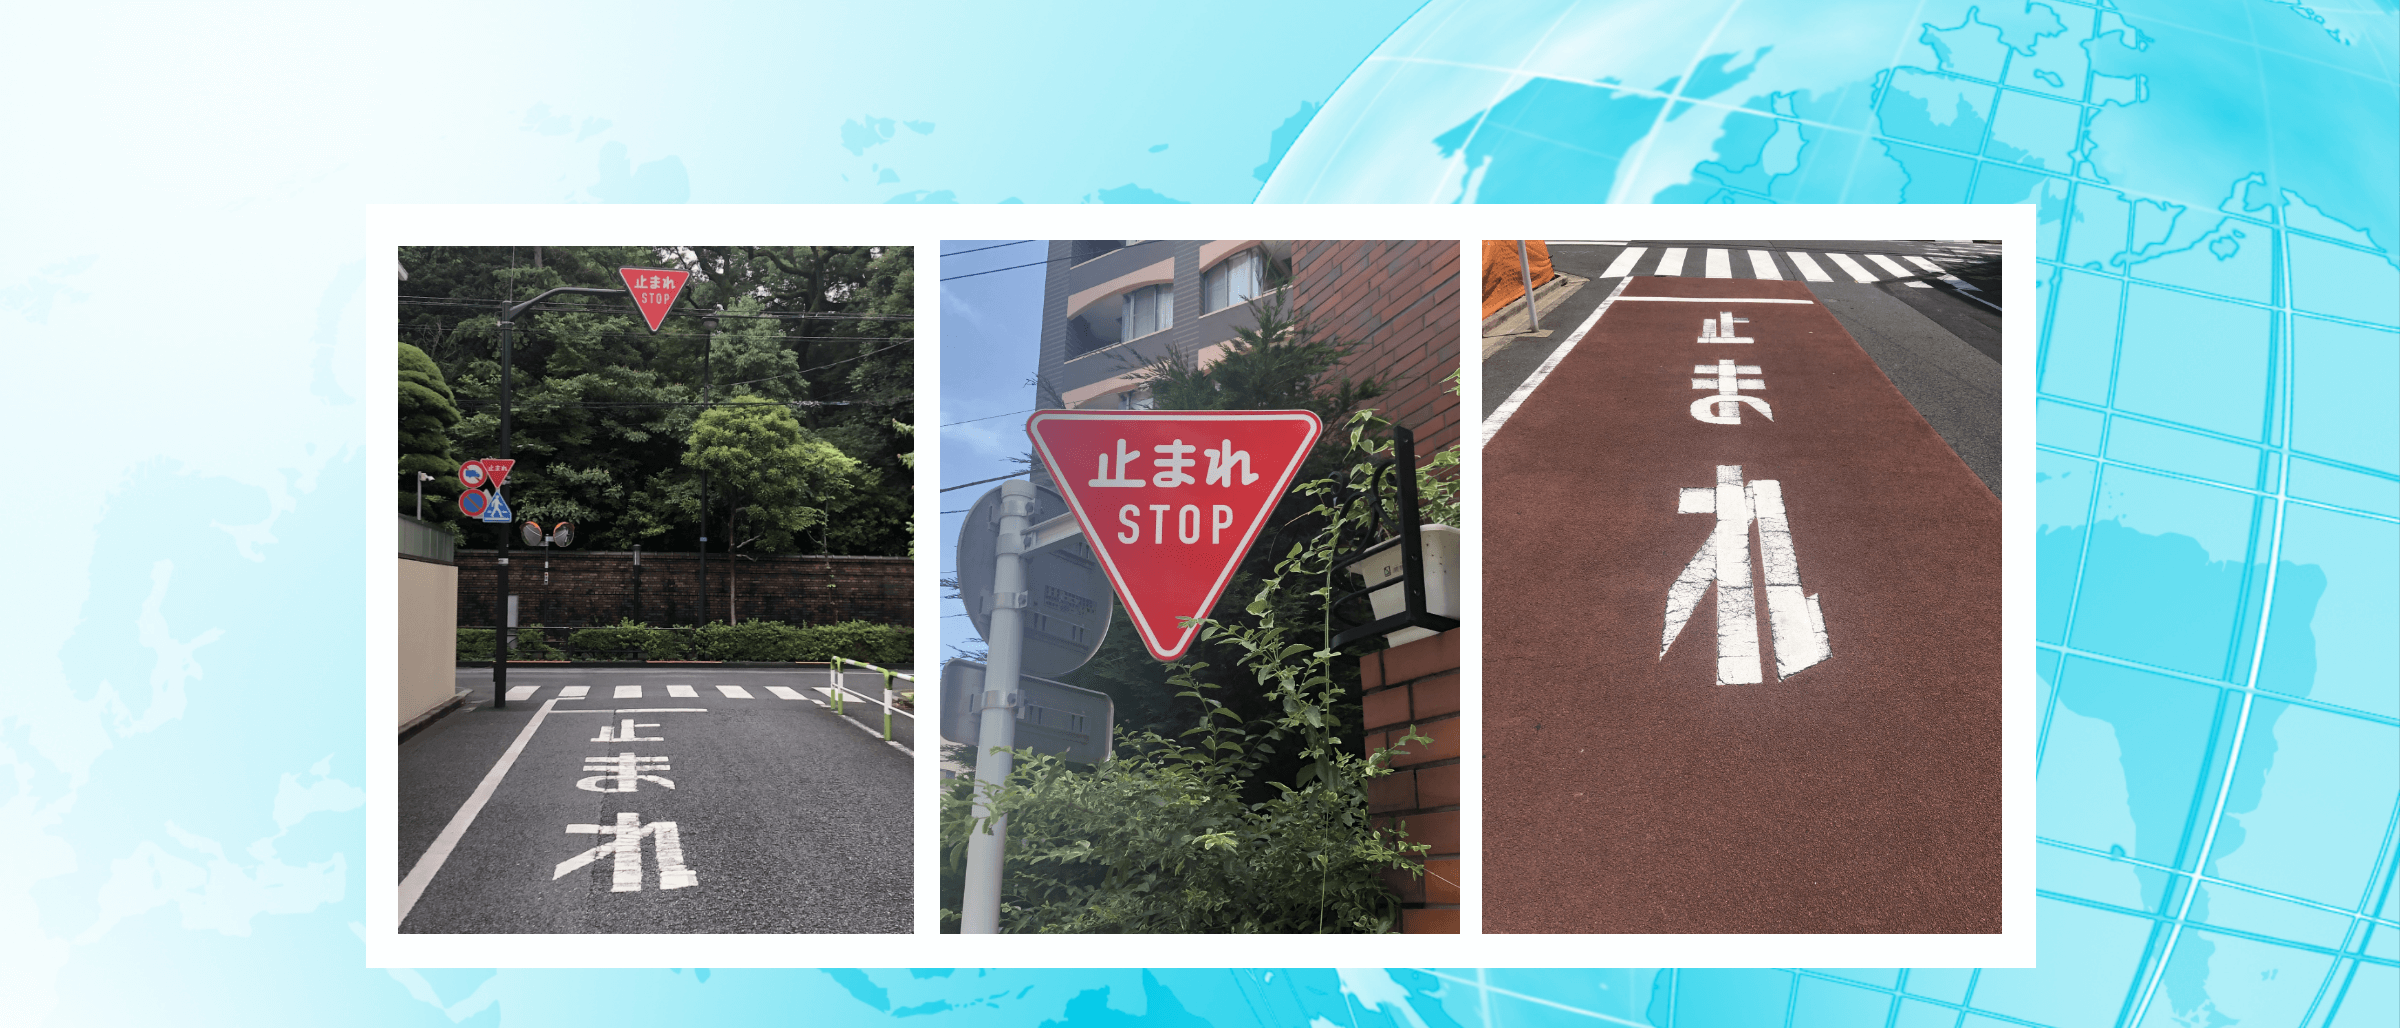 一時停止の２つのマーク、止まれの標識と路面標示（路面標示）って何が違う？